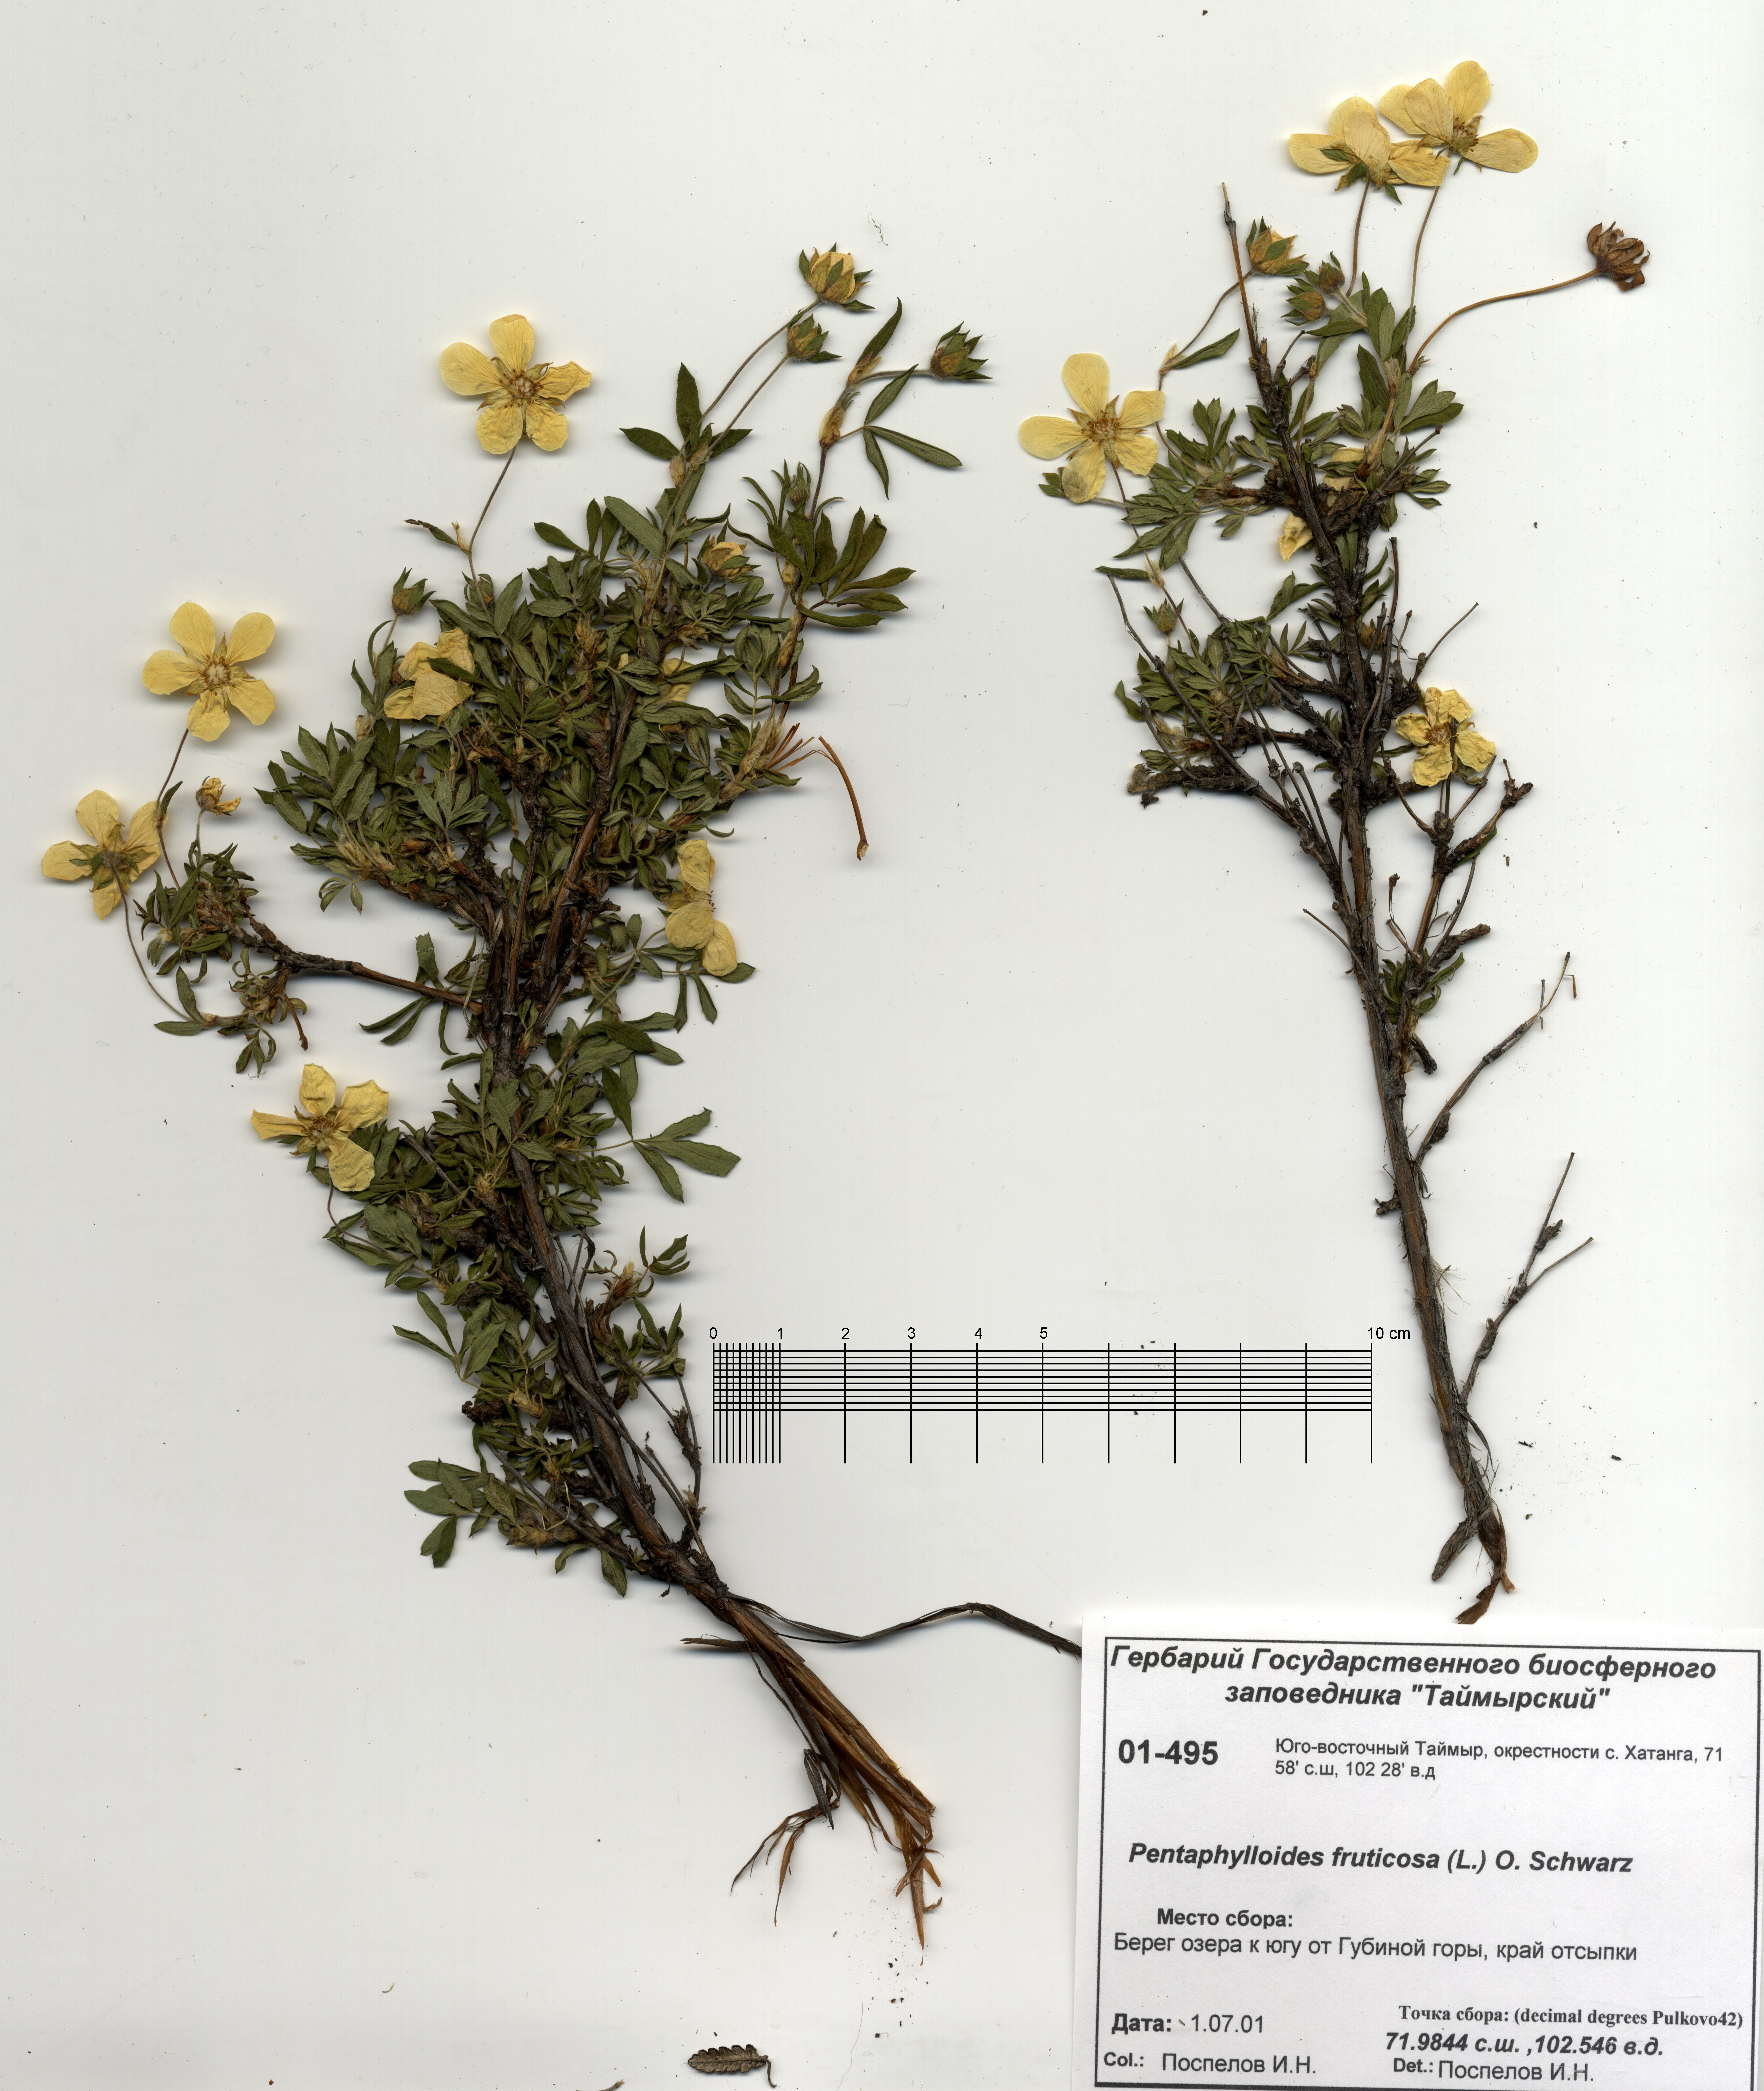 Pentaphylloides fruticosa (L.) O. Schwarz - Курильский чай (пятилистник)  кустарниковый